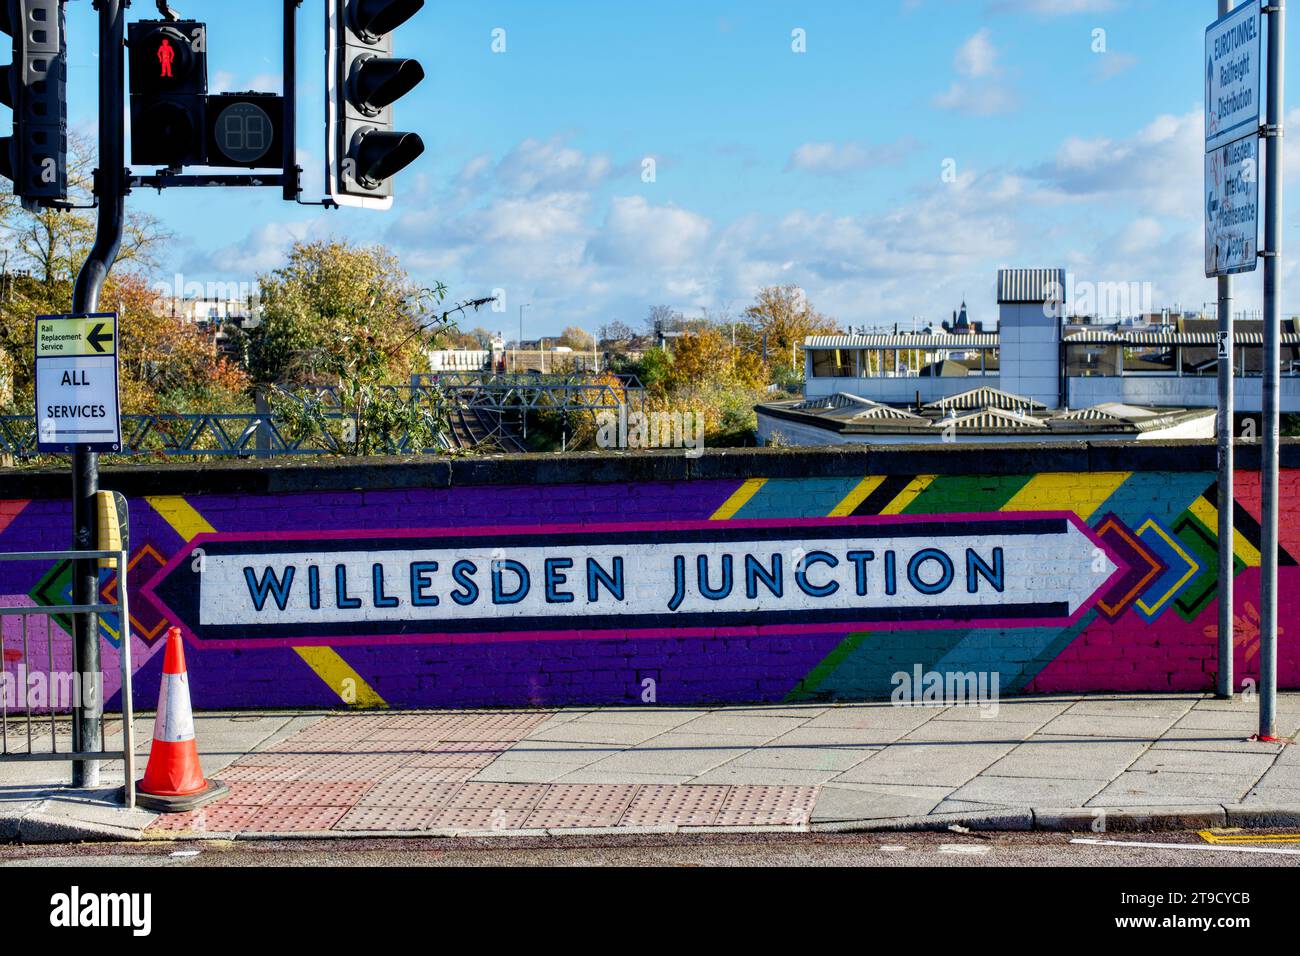 Willesden Junction Station, Harlesden, Borough of Brent, London, England, UK Stock Photo